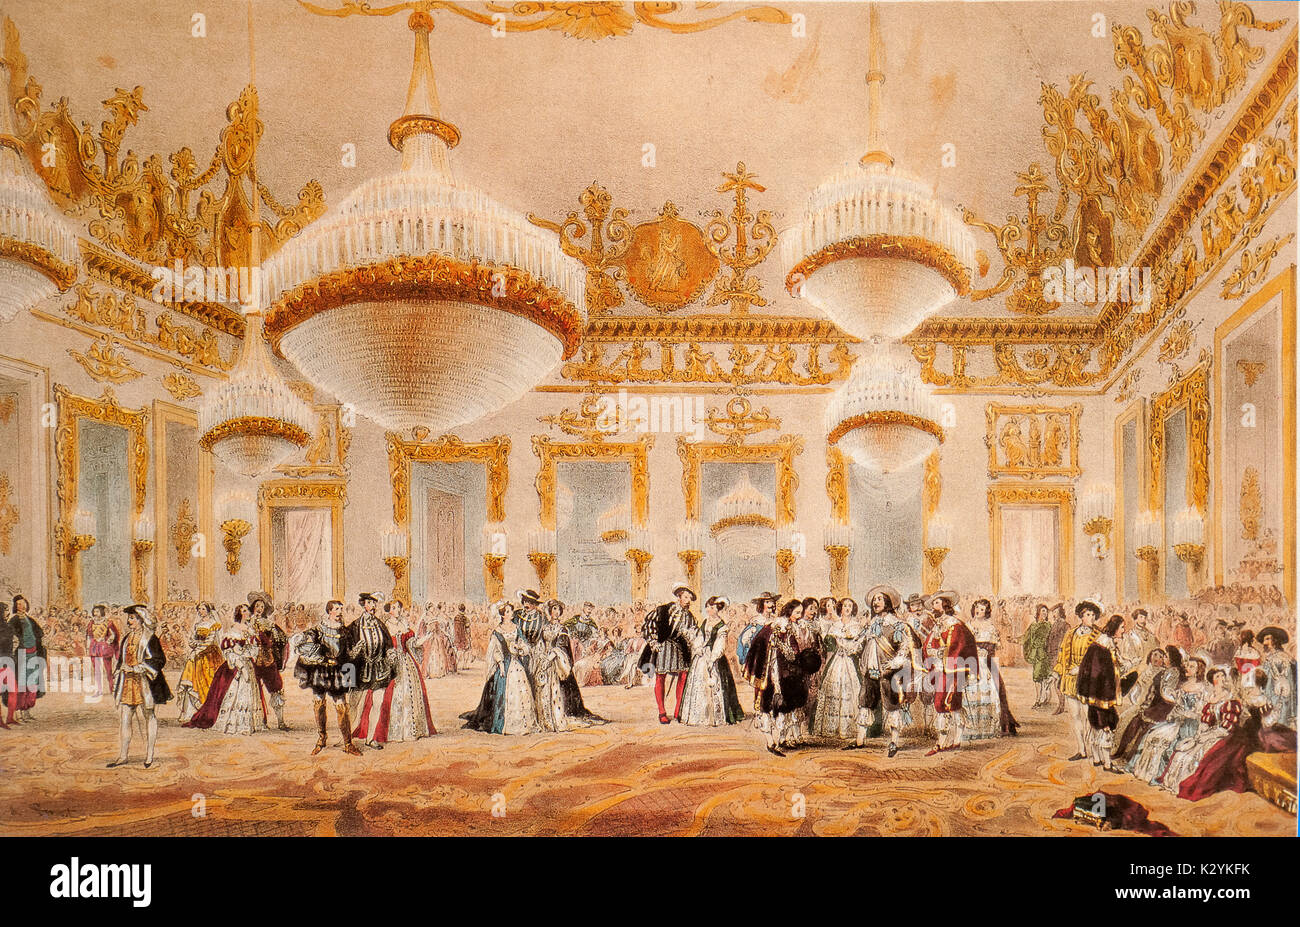 Campanie Naples Grande danse dans le Hall du Palais Royal Borbonic une connaissance de Luigi Marta illustrant la mascarade du 20 février 1854 Banque D'Images